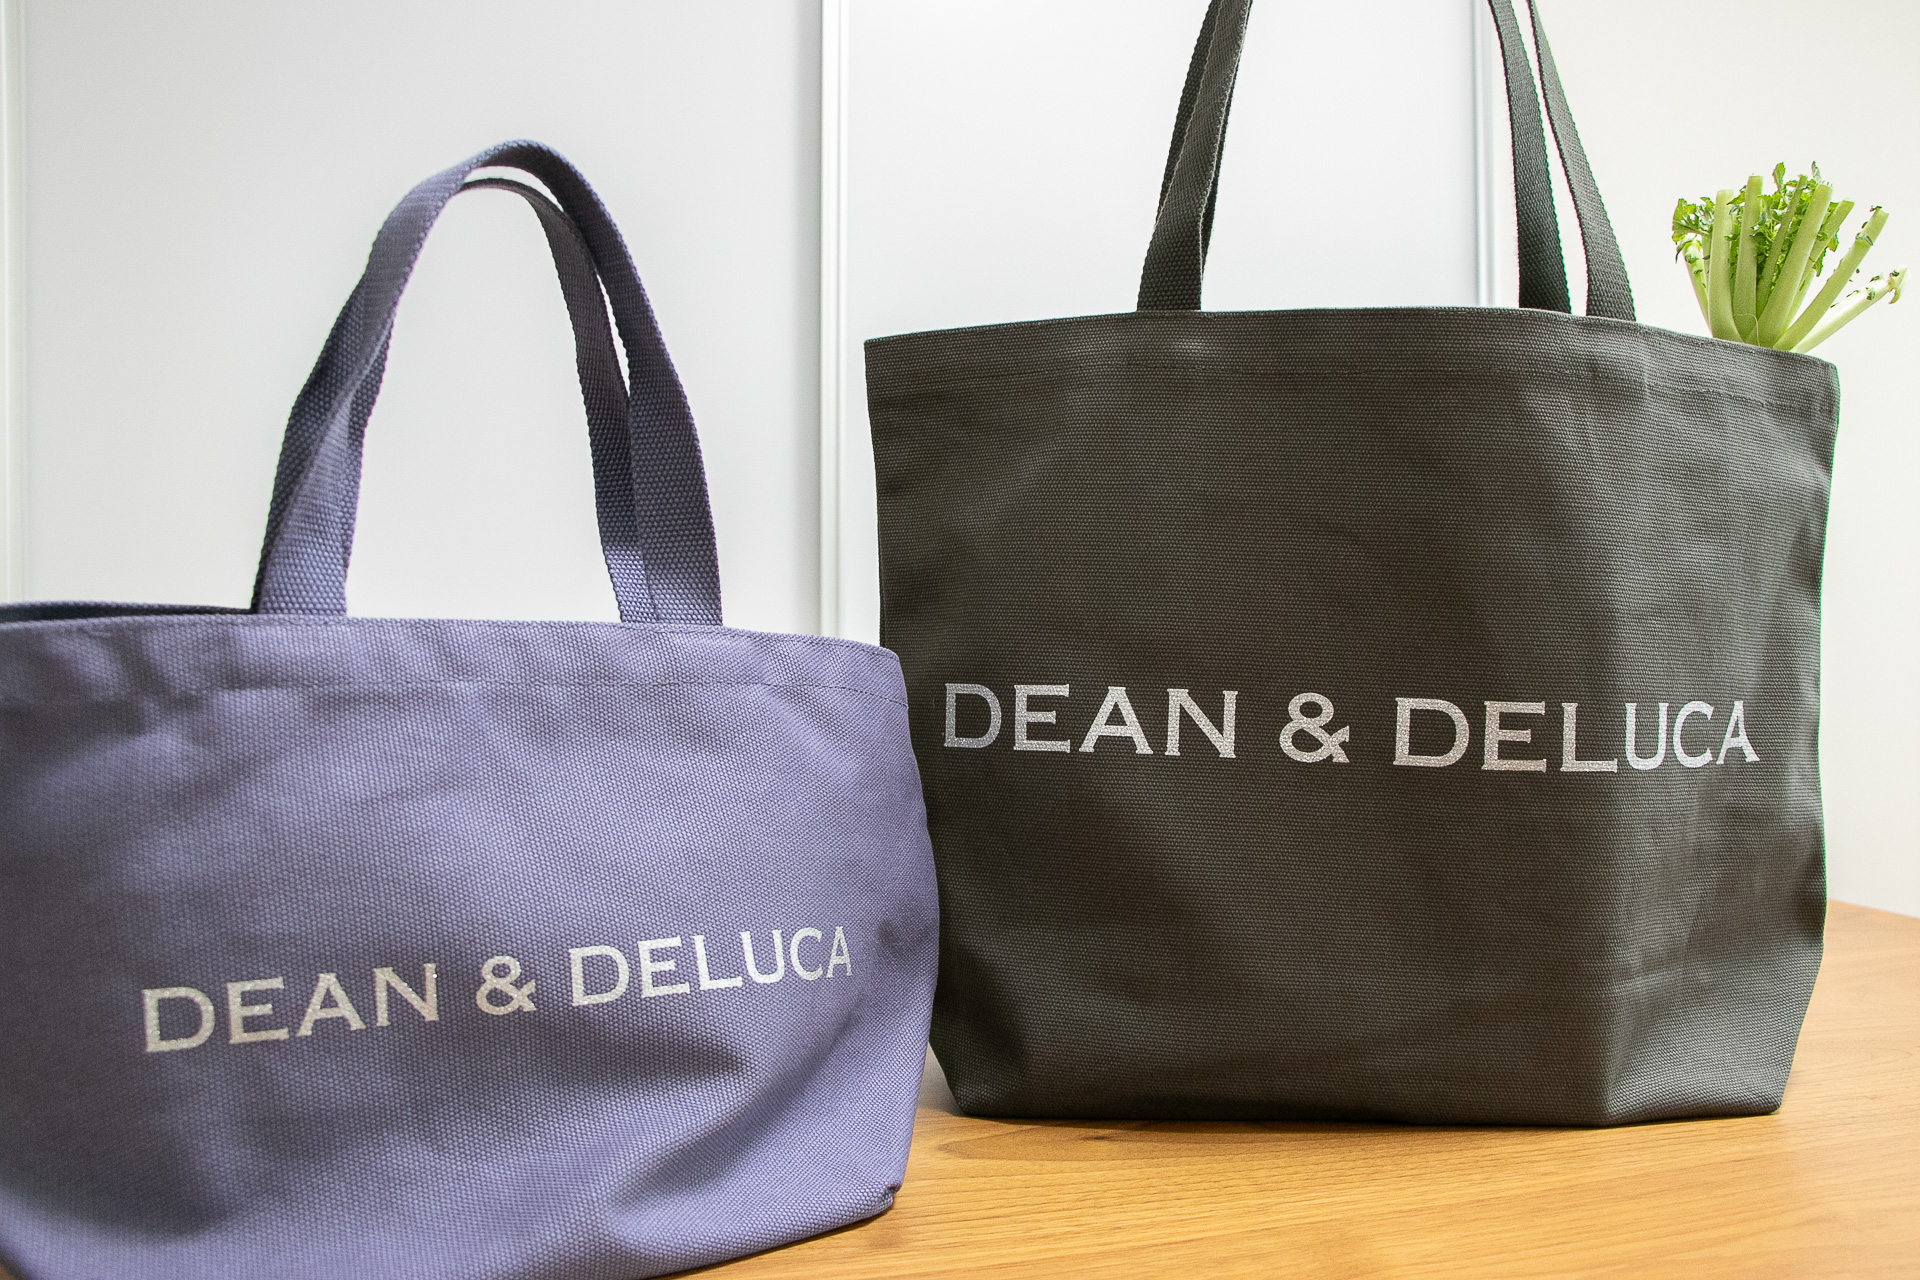 DEAN ＆ DELUCA、チャリティートートバッグを買ってきたのでいろいろ